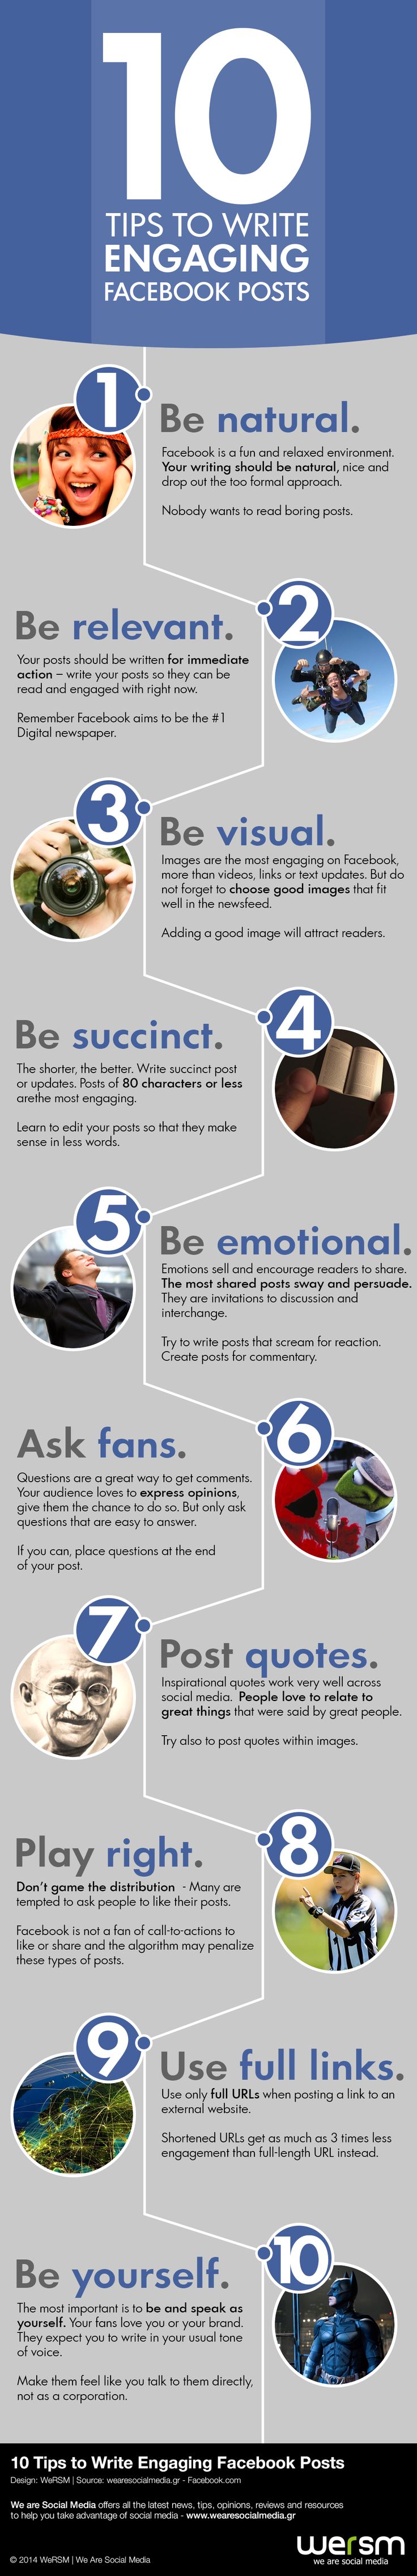 10 conseils pour augmenter les interactions sur Facebook